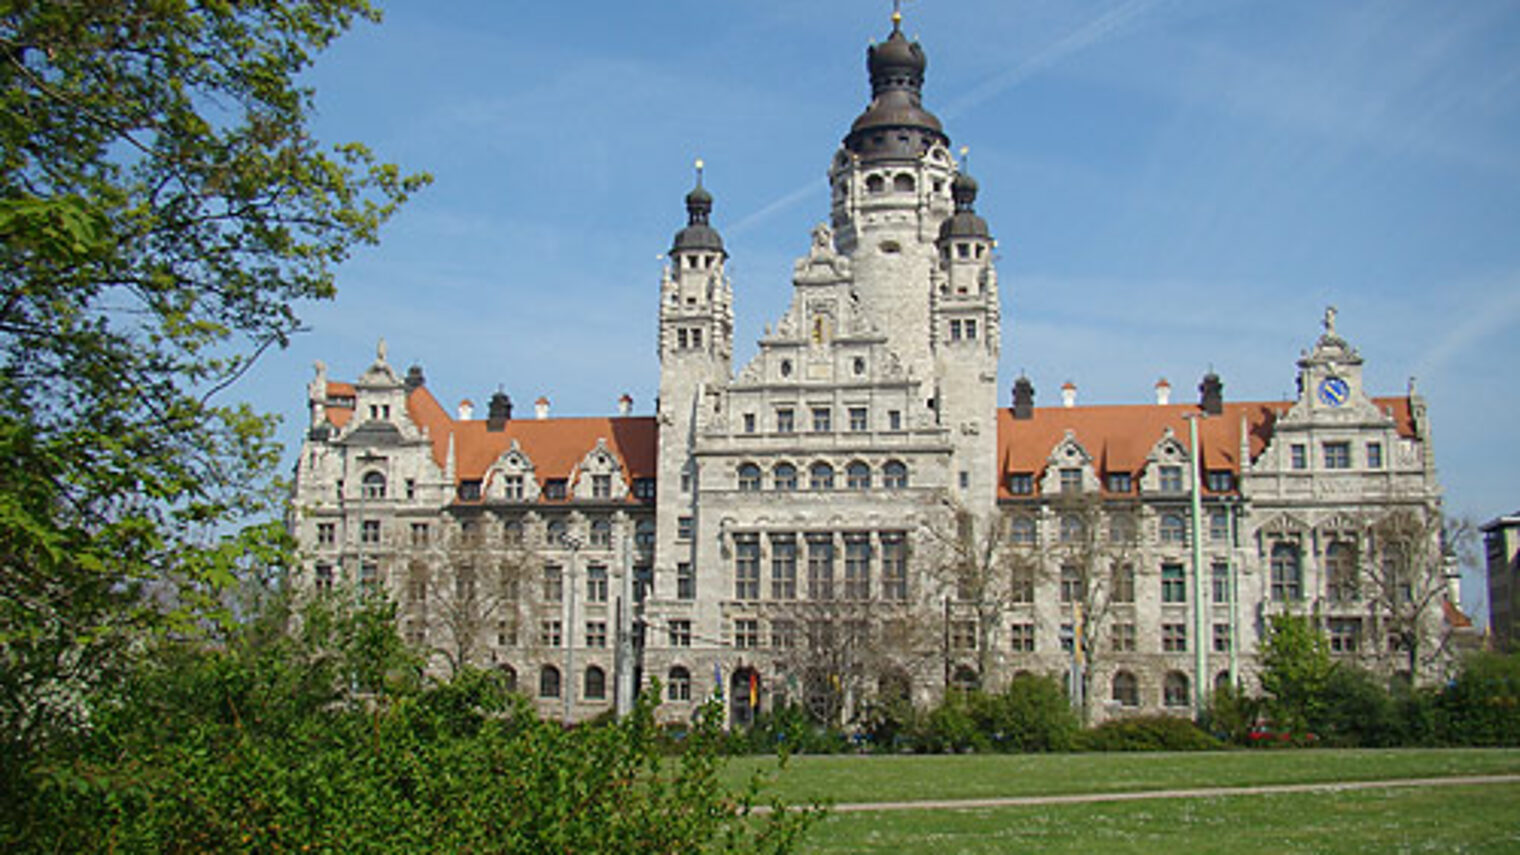 Neues Rathaus Leipzig. Bild: pixelio.de - Martin Wolf